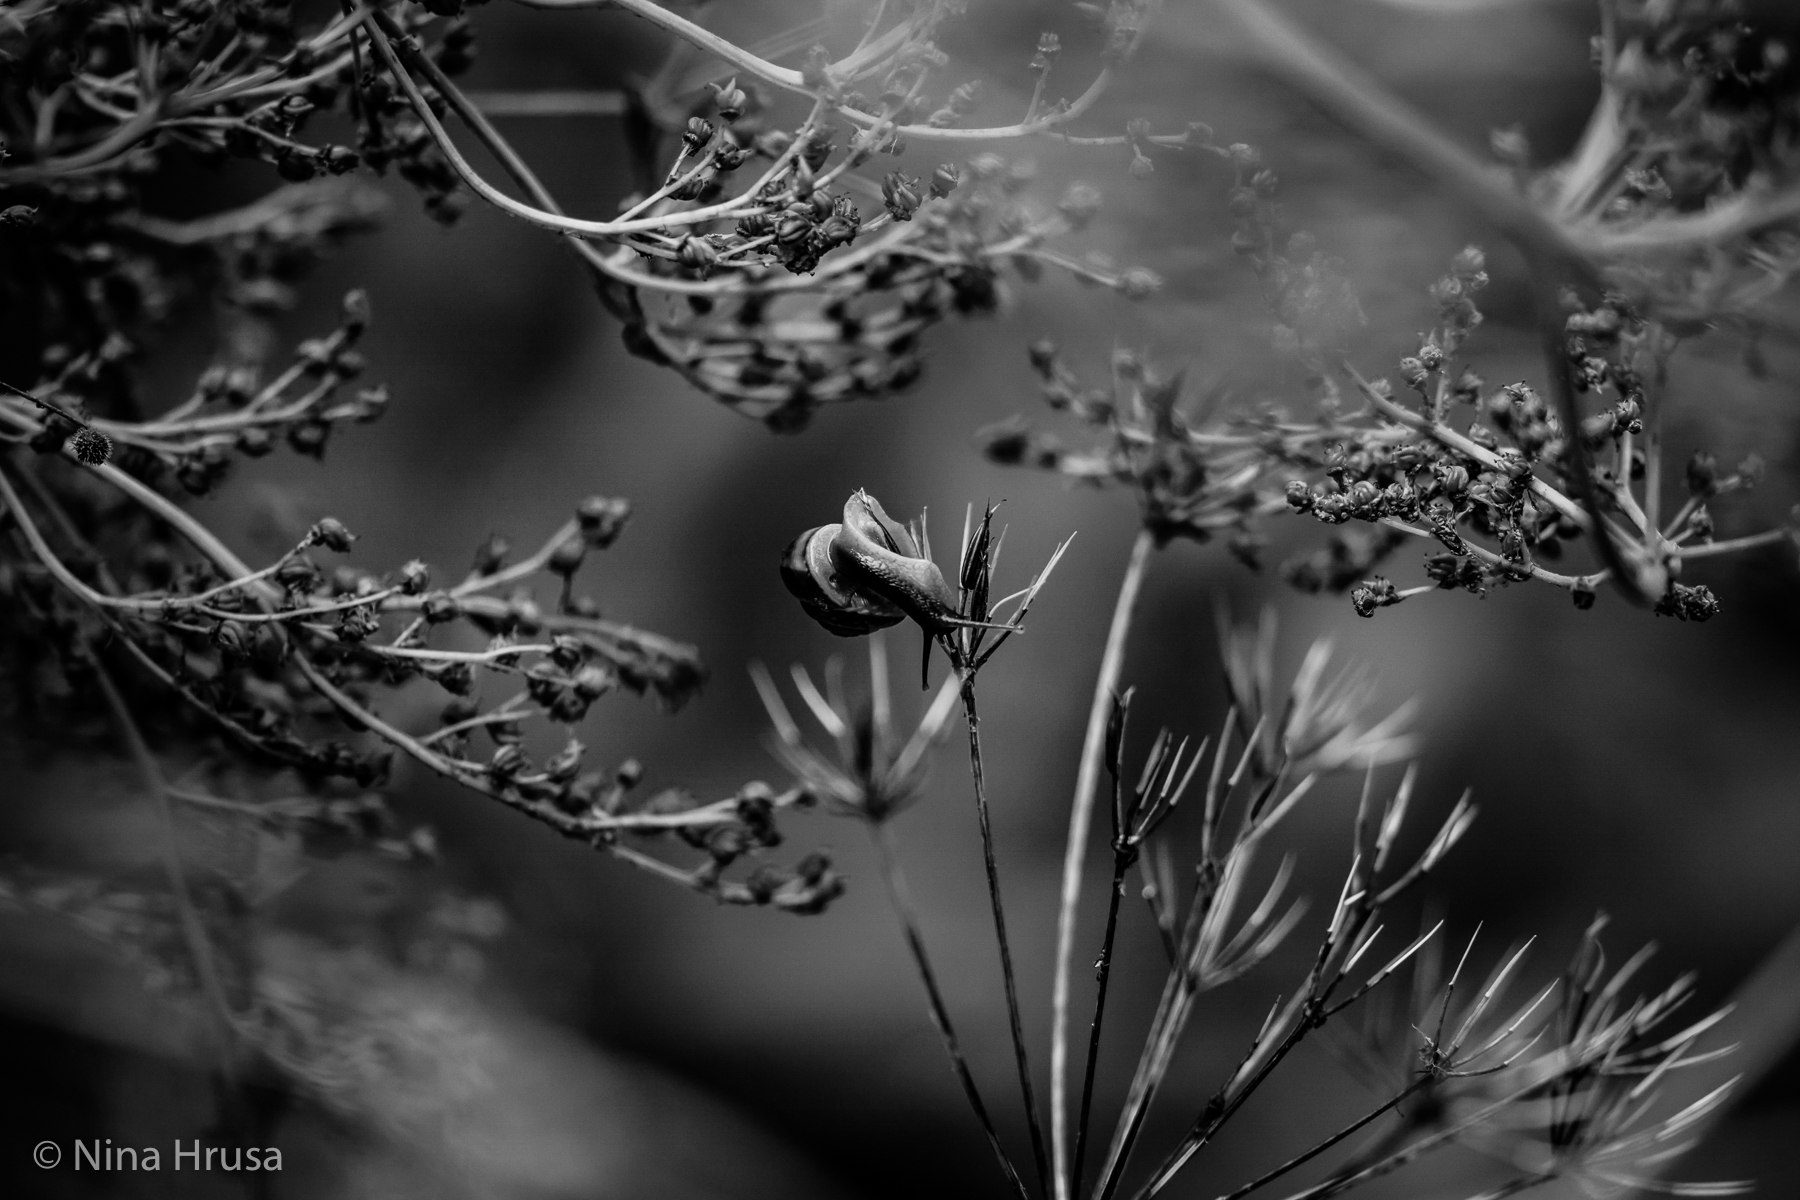 Schneckentanz schwarzweiß, dance of the snail black and white, Vernissage "die Resonanz der Stille", Zwischenmomente | Nina Hrusa Photography